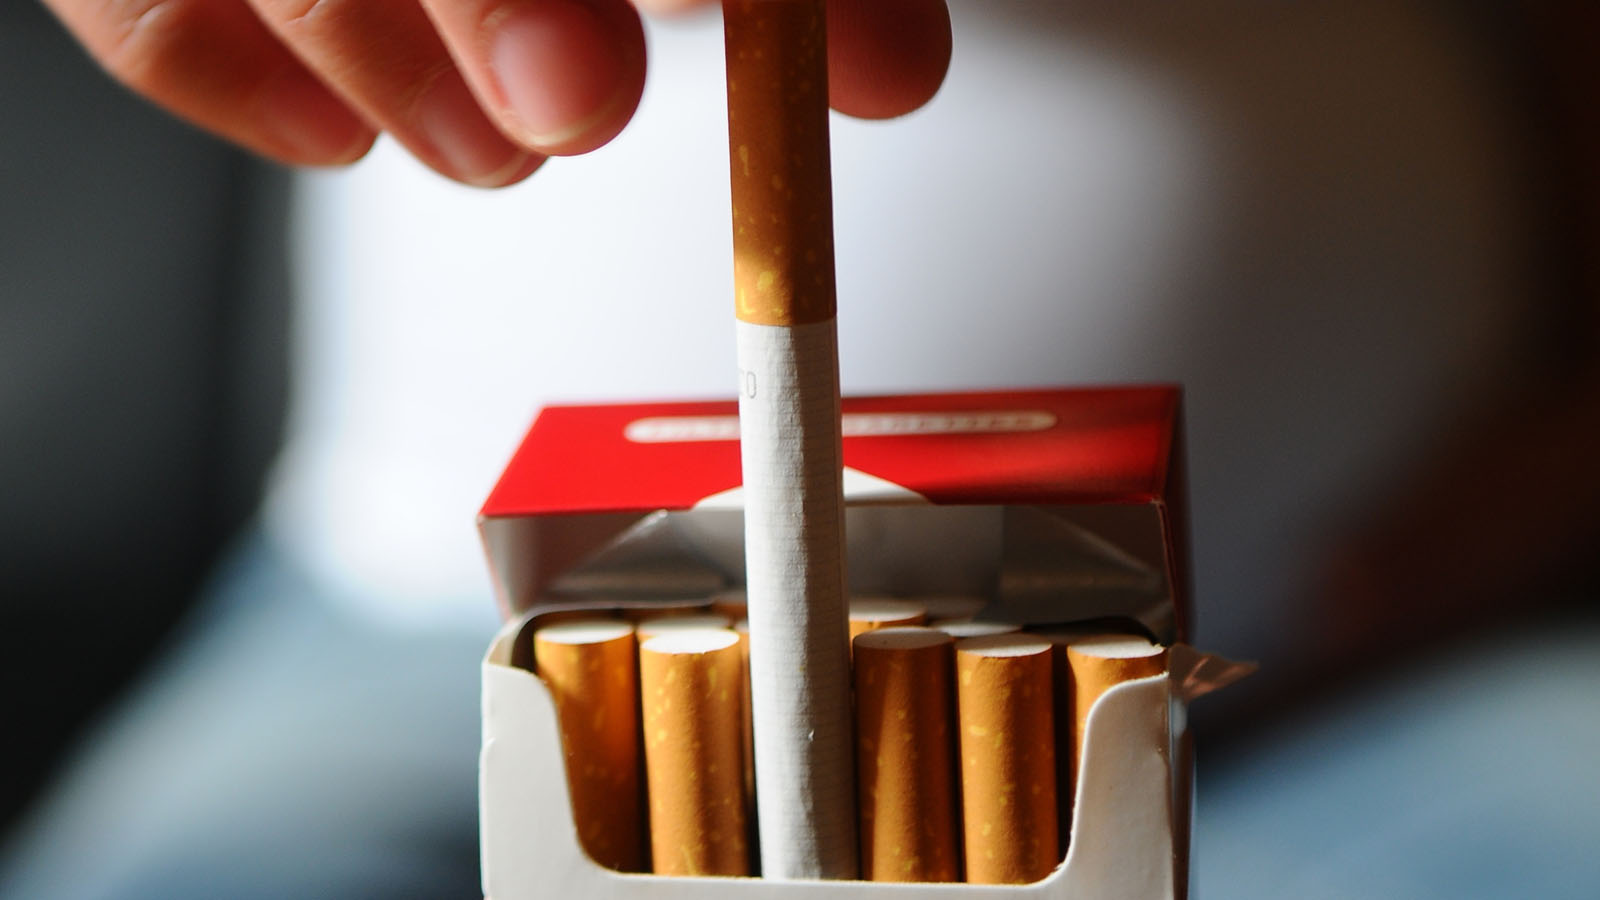 ‪فرنسا تنفق 25 مليار يورو سنويا على أضرار التدخين الصحية‬ (الألمانية)